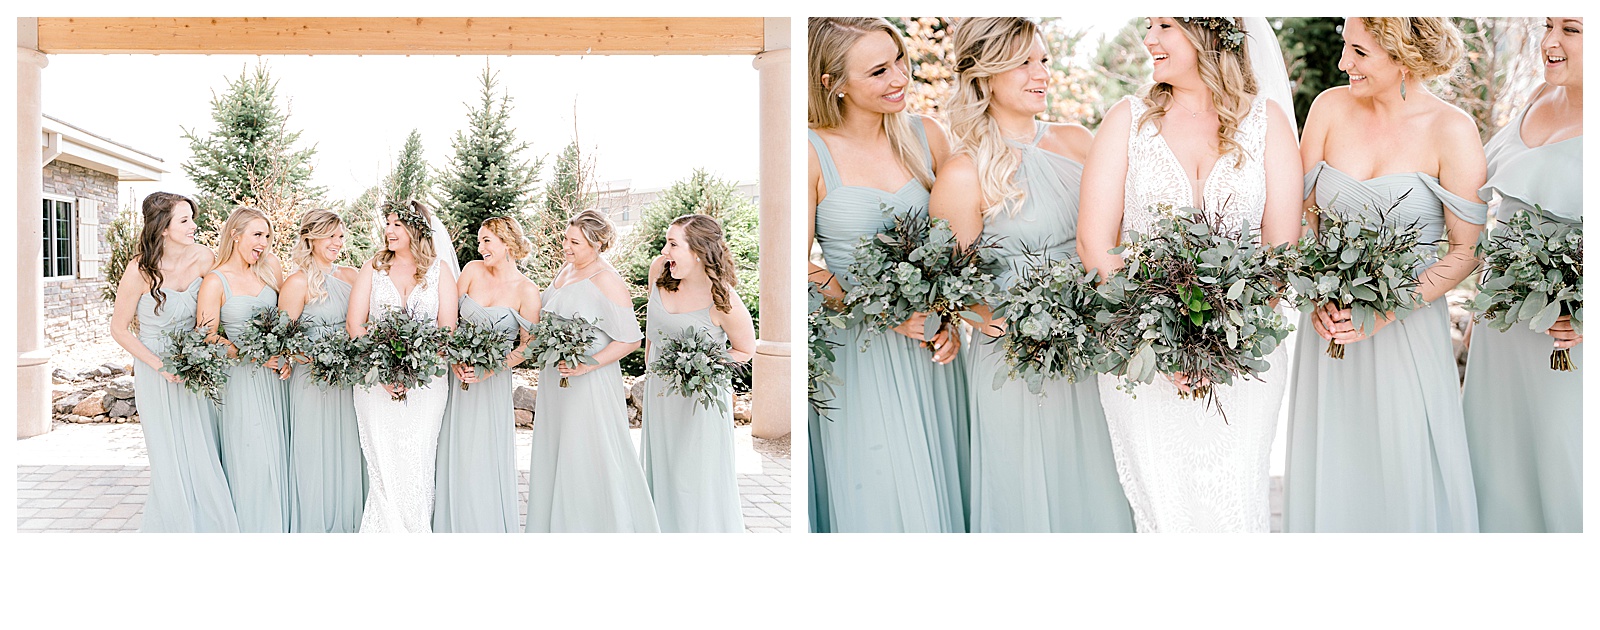 bridesmaids photos-Colorado Photographer